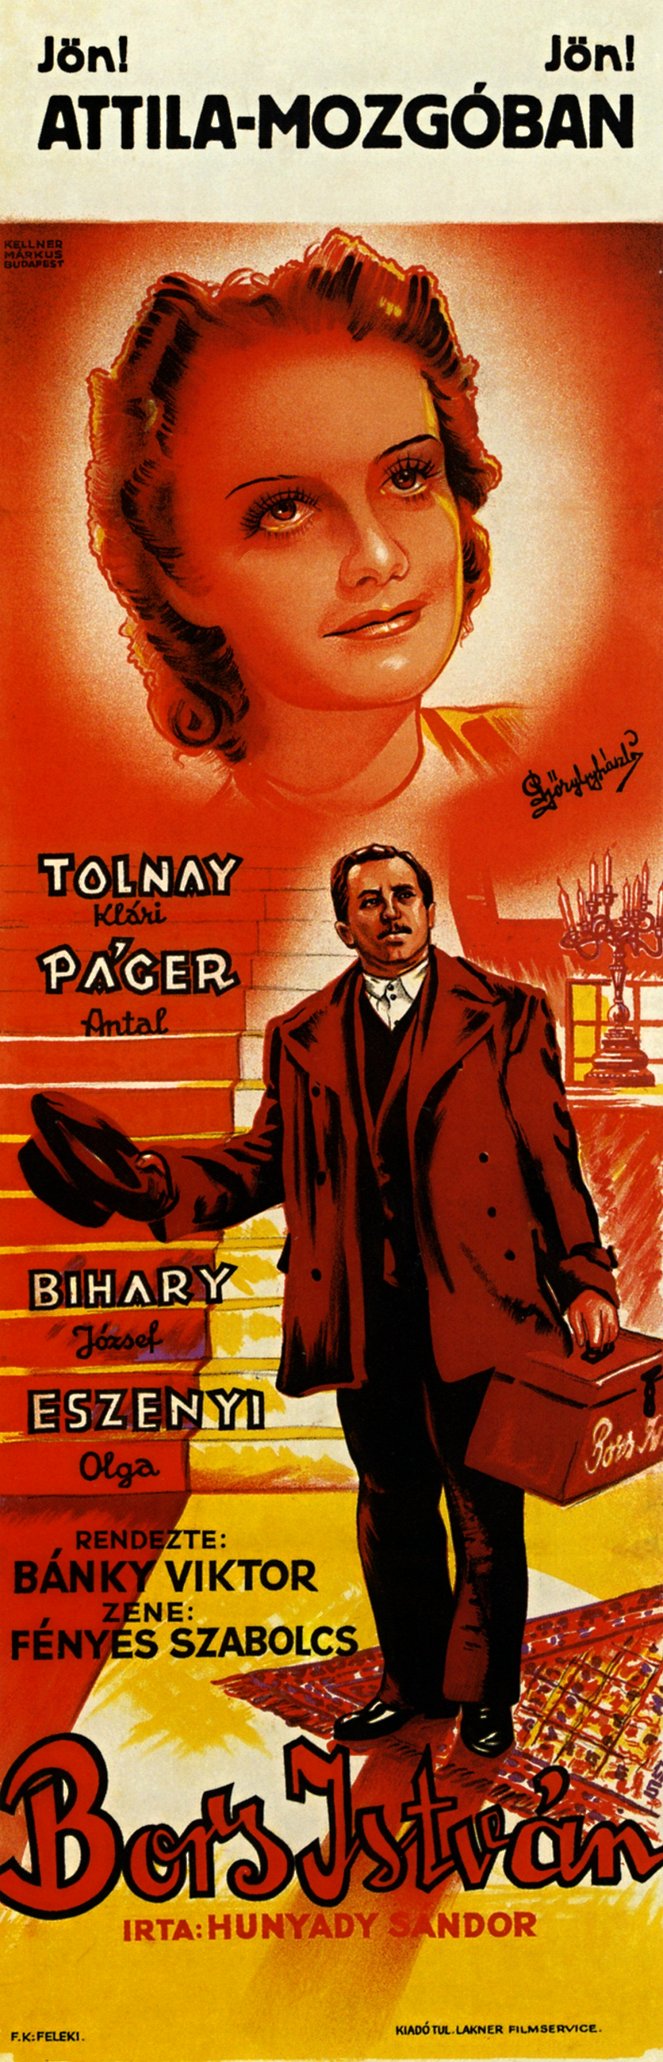 Bors István - Posters